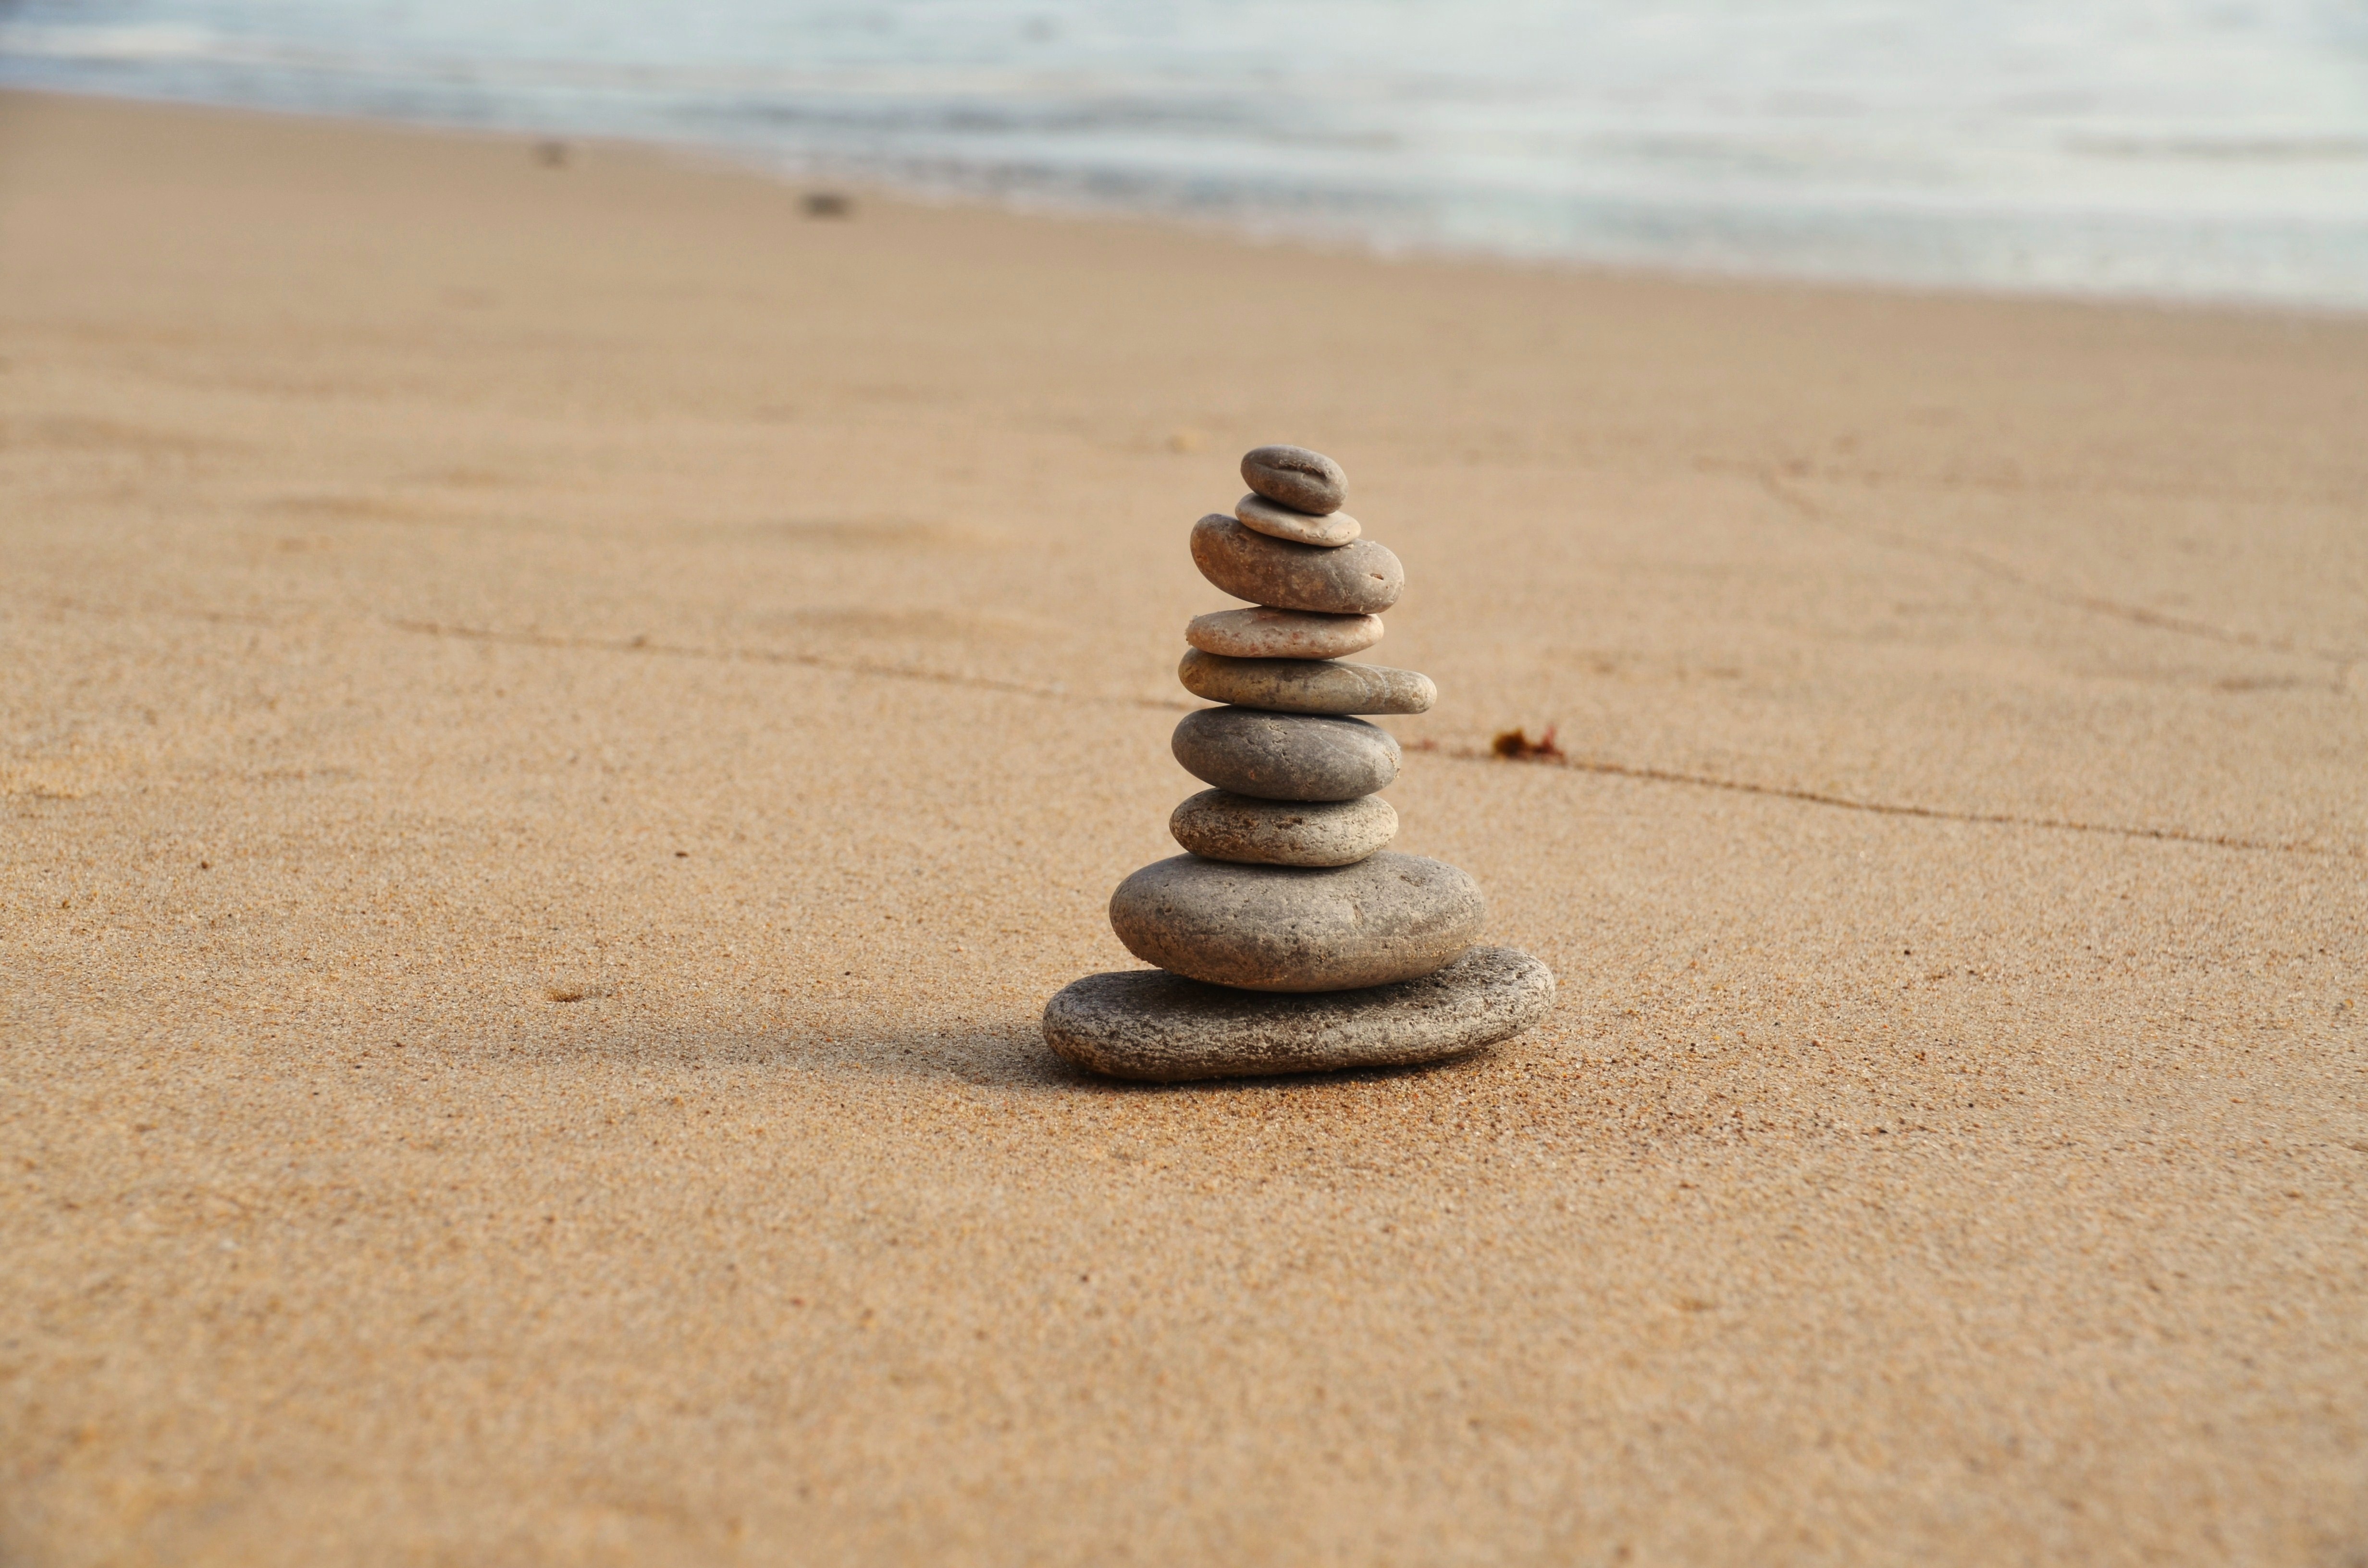 A pyramid of pebbles on a sandy beach